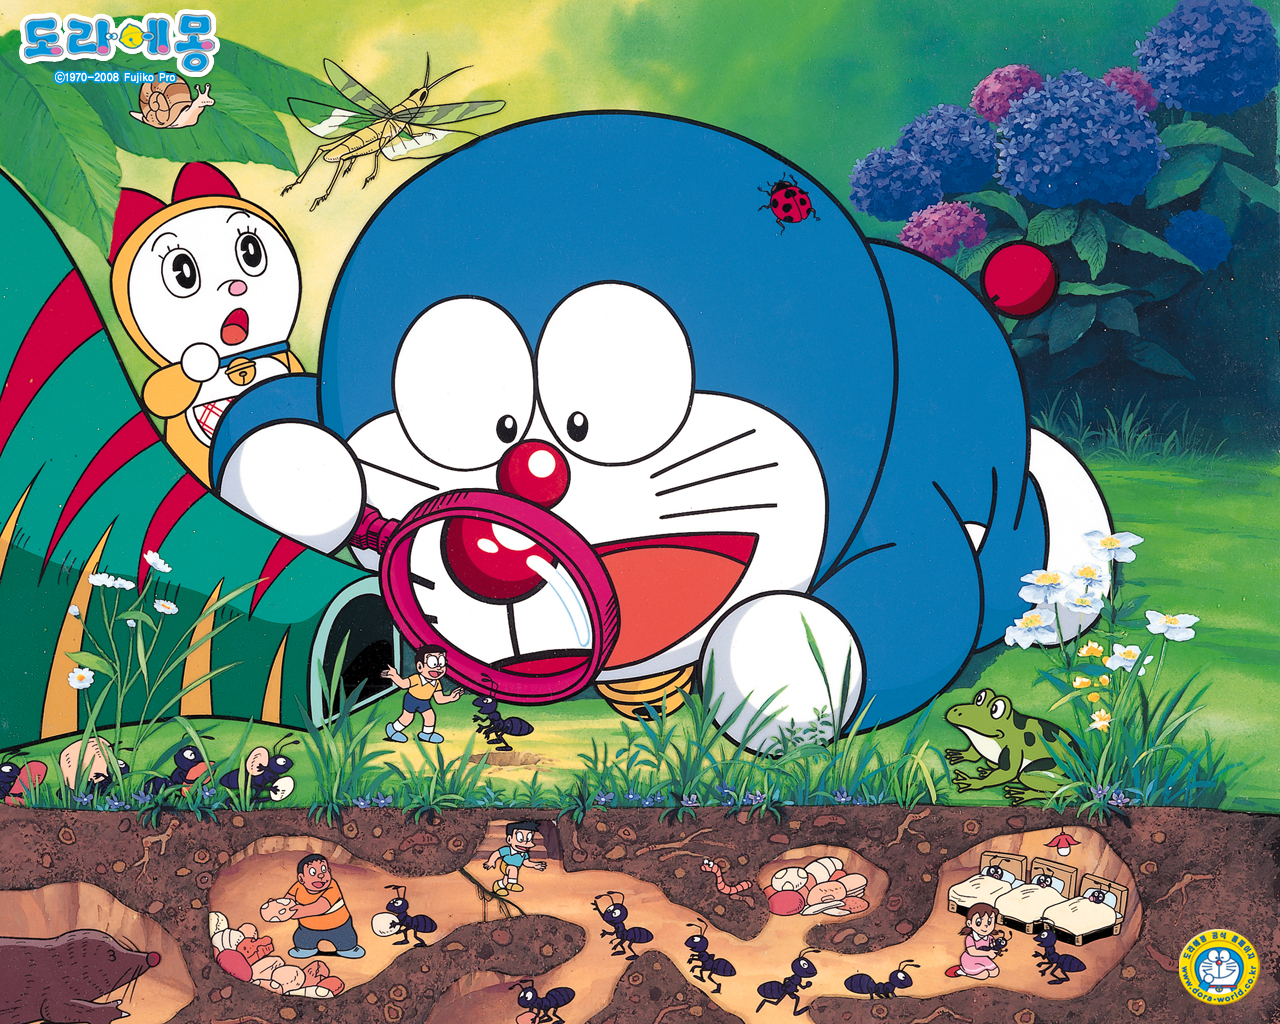 Bạn là fan của bộ truyện tranh Doraemon? Hãy cùng chiêm ngưỡng những bức ảnh đẹp và đầy tình cảm của chú mèo máy này trong anime Doraemon picture. Bức tranh nào sẽ làm bạn cảm thấy hạnh phúc và tươi cười?